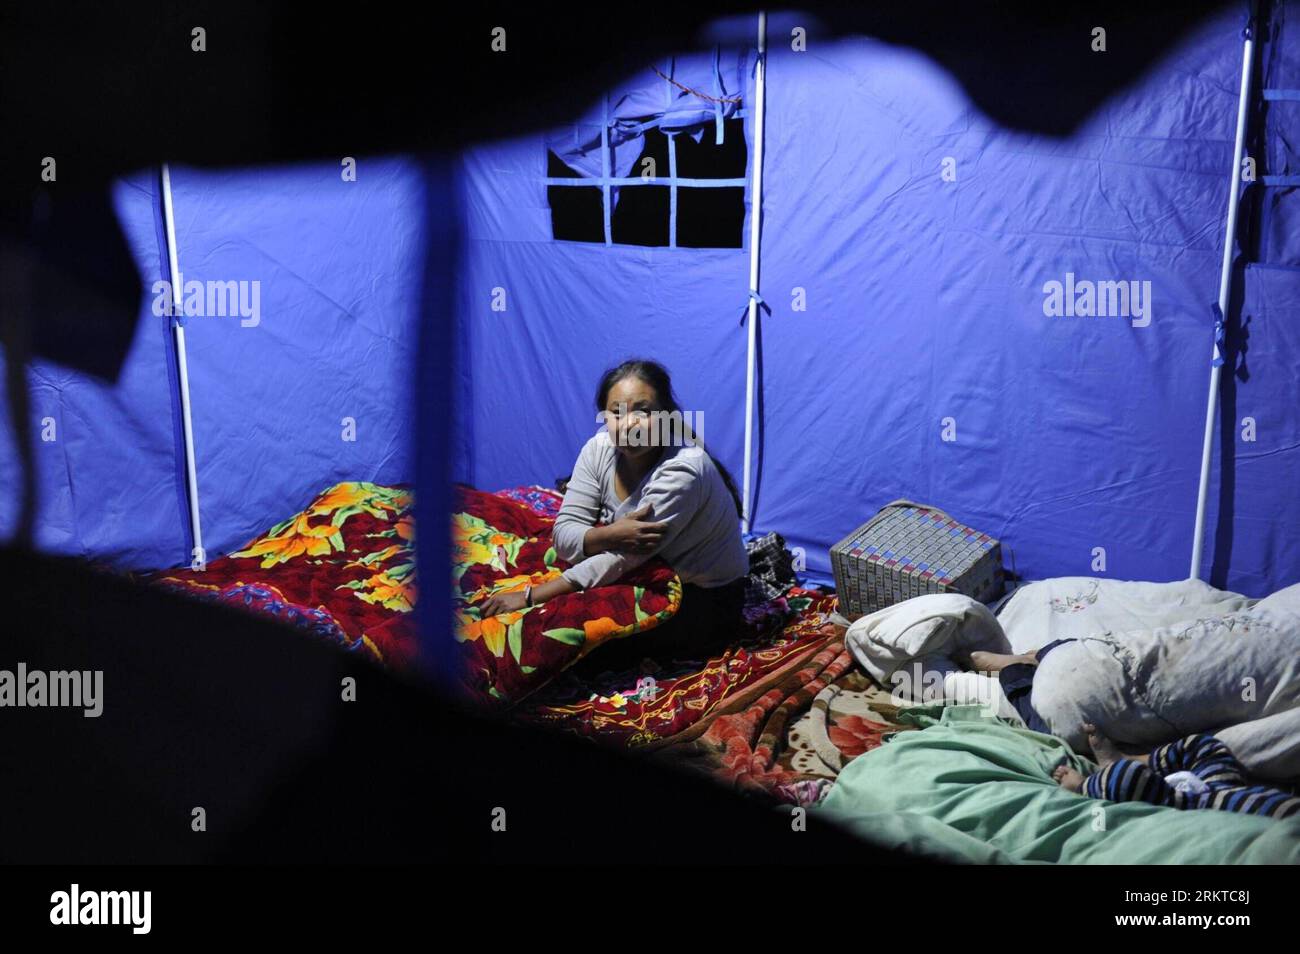 Bildnummer: 58444233 Datum: 08.09.2012 Copyright: imago/Xinhua (120908) -- WEINING, 8 settembre 2012 (Xinhua) -- le vittime di Quake vivono in una tenda nel villaggio di Jianjiao nella contea di Weining, nella provincia di Guizhou nella Cina sud-occidentale, 8 settembre 2012. Due terremoti che misurano più di 5 hanno colpito la vicina contea di Yiliang nella provincia dello Yunnan della Cina sud-occidentale venerdì. La contea di Weining ha adottato misure per fornire alle vittime del terremoto materiali di soccorso, tra cui cibo, acqua e tende. (Xinhua/Ou Dongqu) (zhs) CHINA-GUIZHOU-EARTHQUAKE-AFTERMATH (CN) PUBLICATIONxNOTxINxCHN Gesellschaft Erdbeben Naturkatastrophen xj Foto Stock